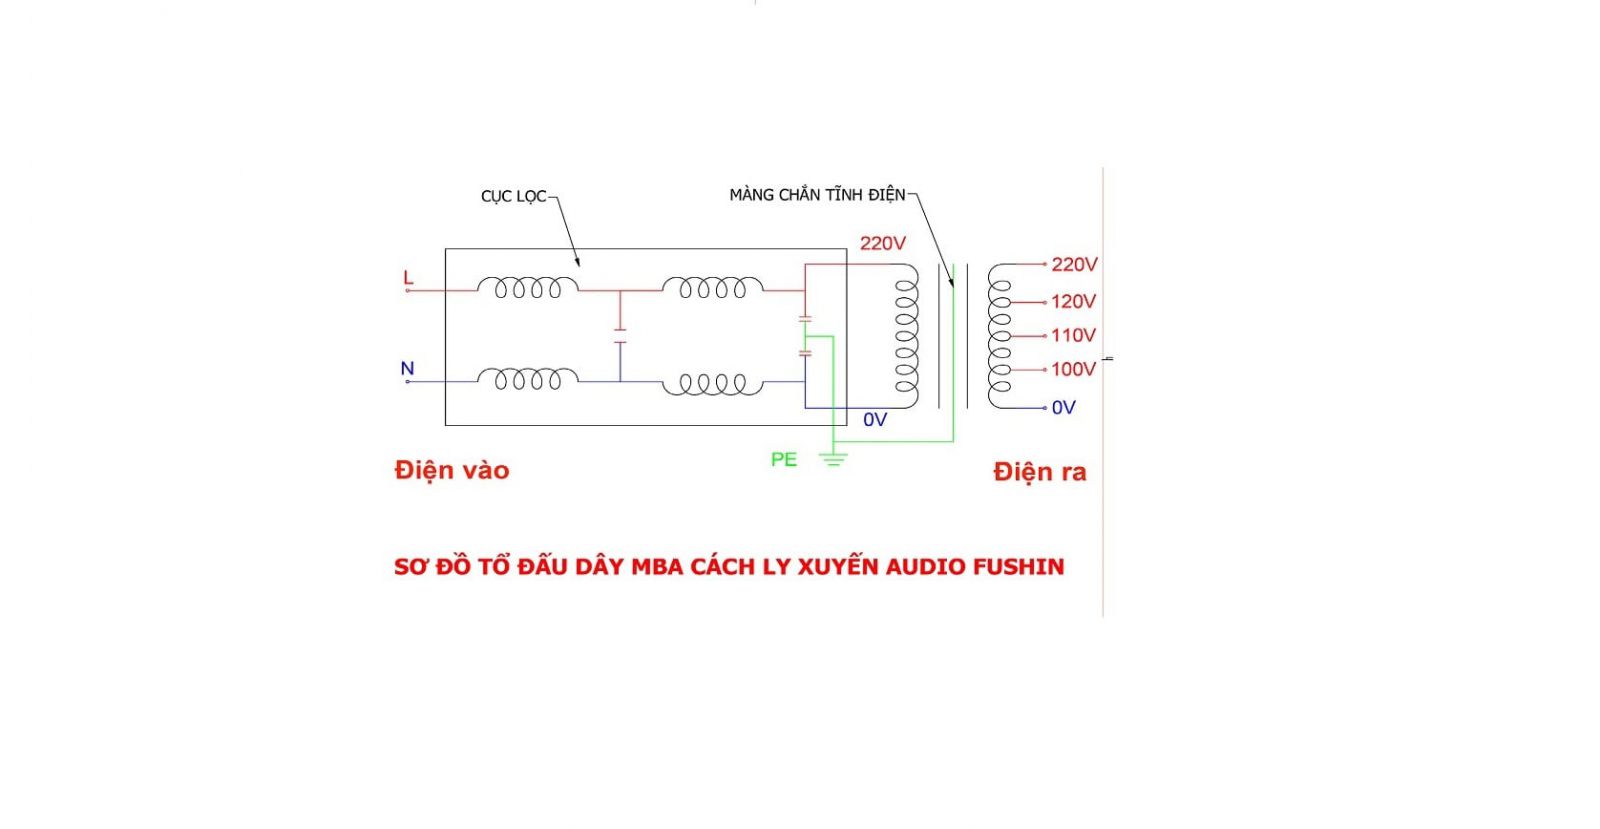  Sơ đồ cấu tạo của Máy biến áp cách ly audio-1.5KVA